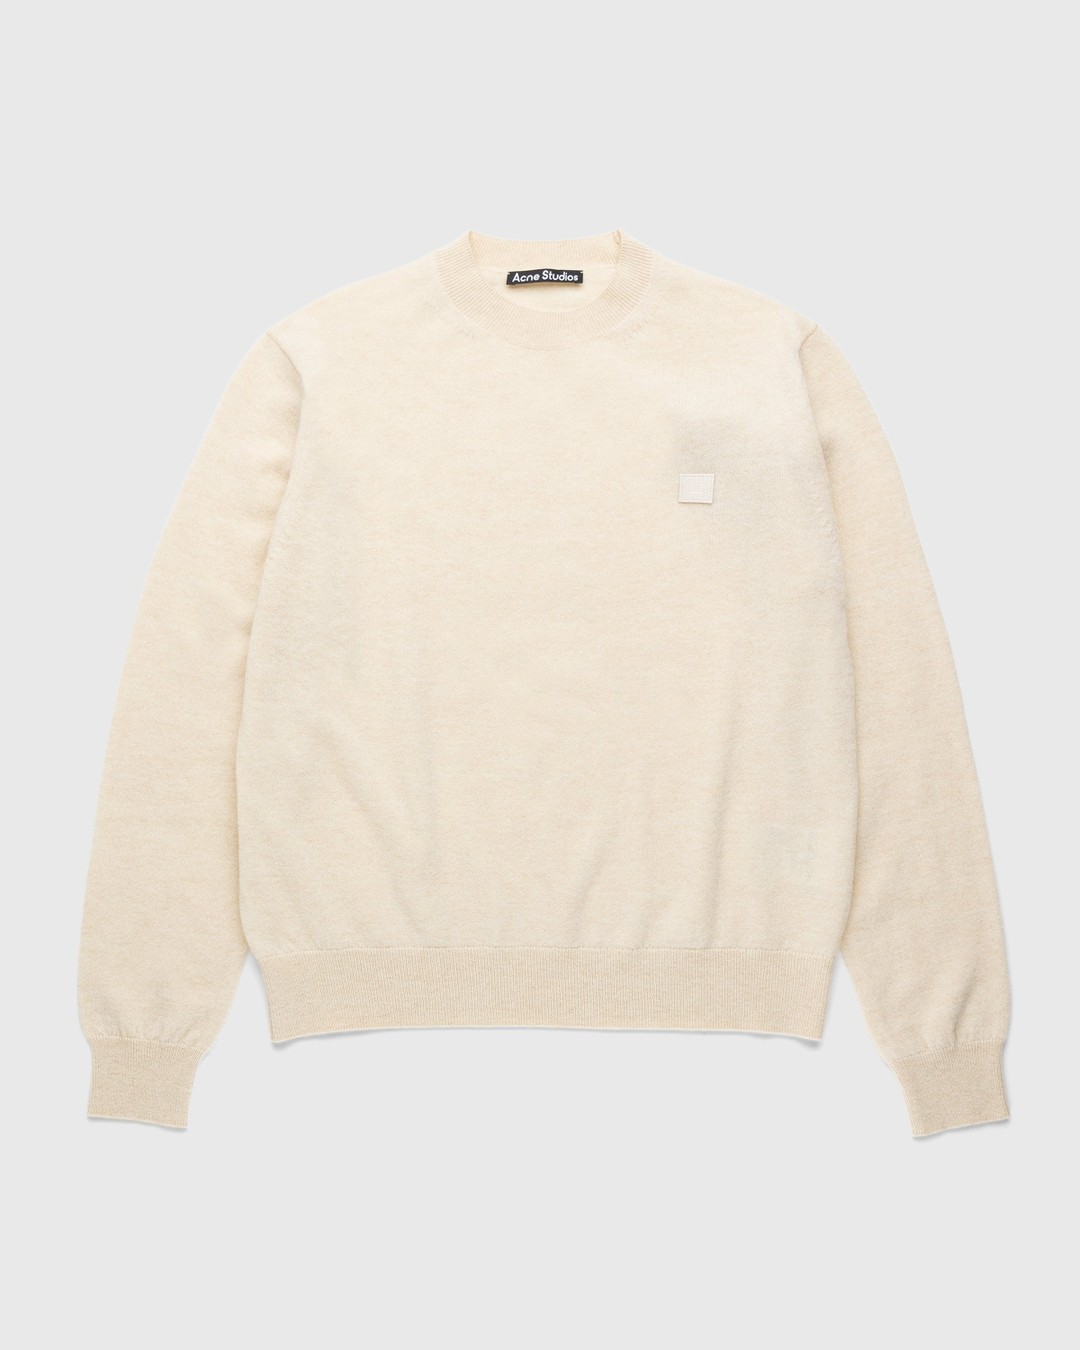 Acne Studios – Wool Crewneck Sweater Oatmeal Melange - Knitwear - Beige - Image 1